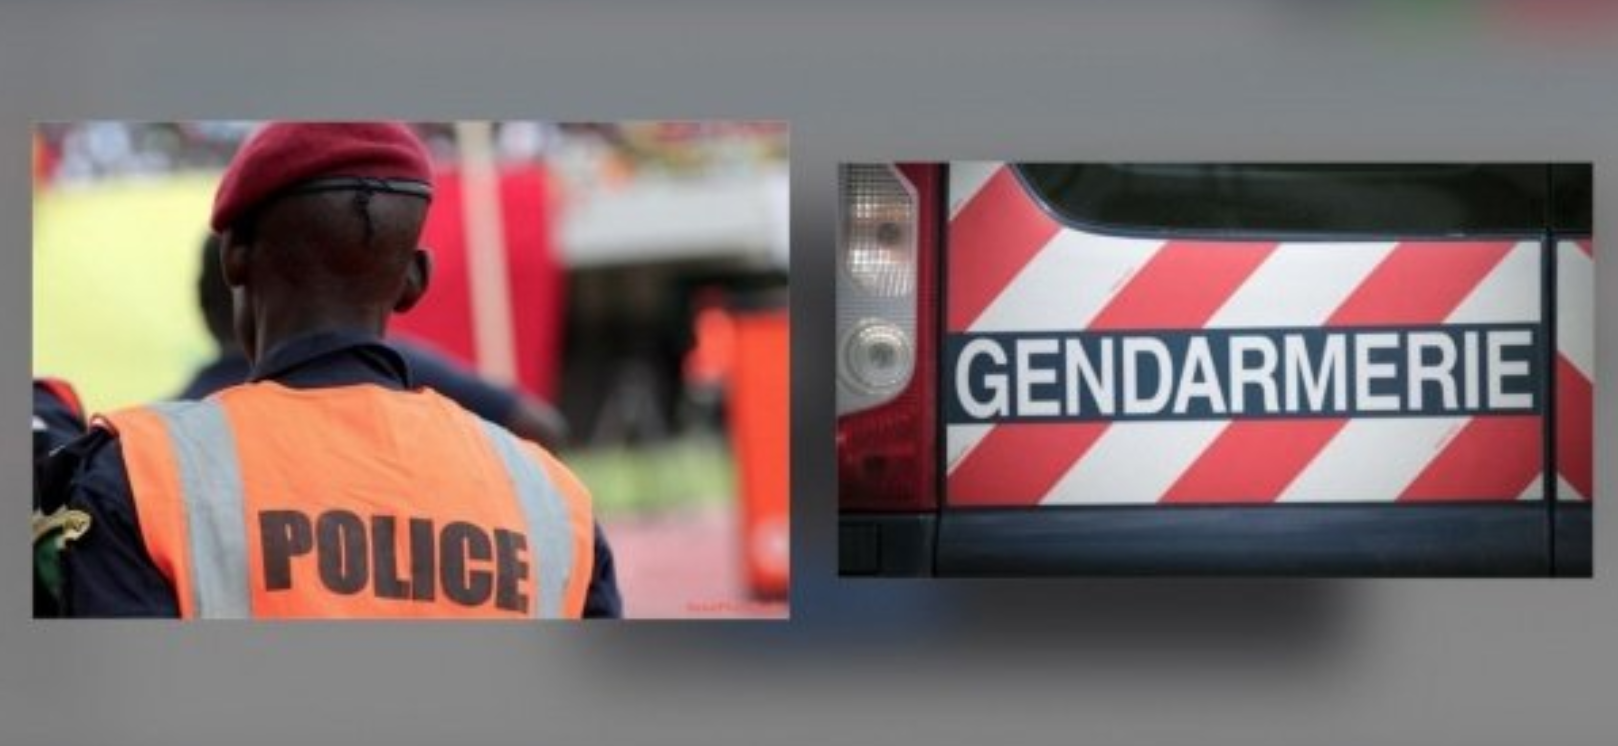 Touba : Un policier tabassé par des gendarmes